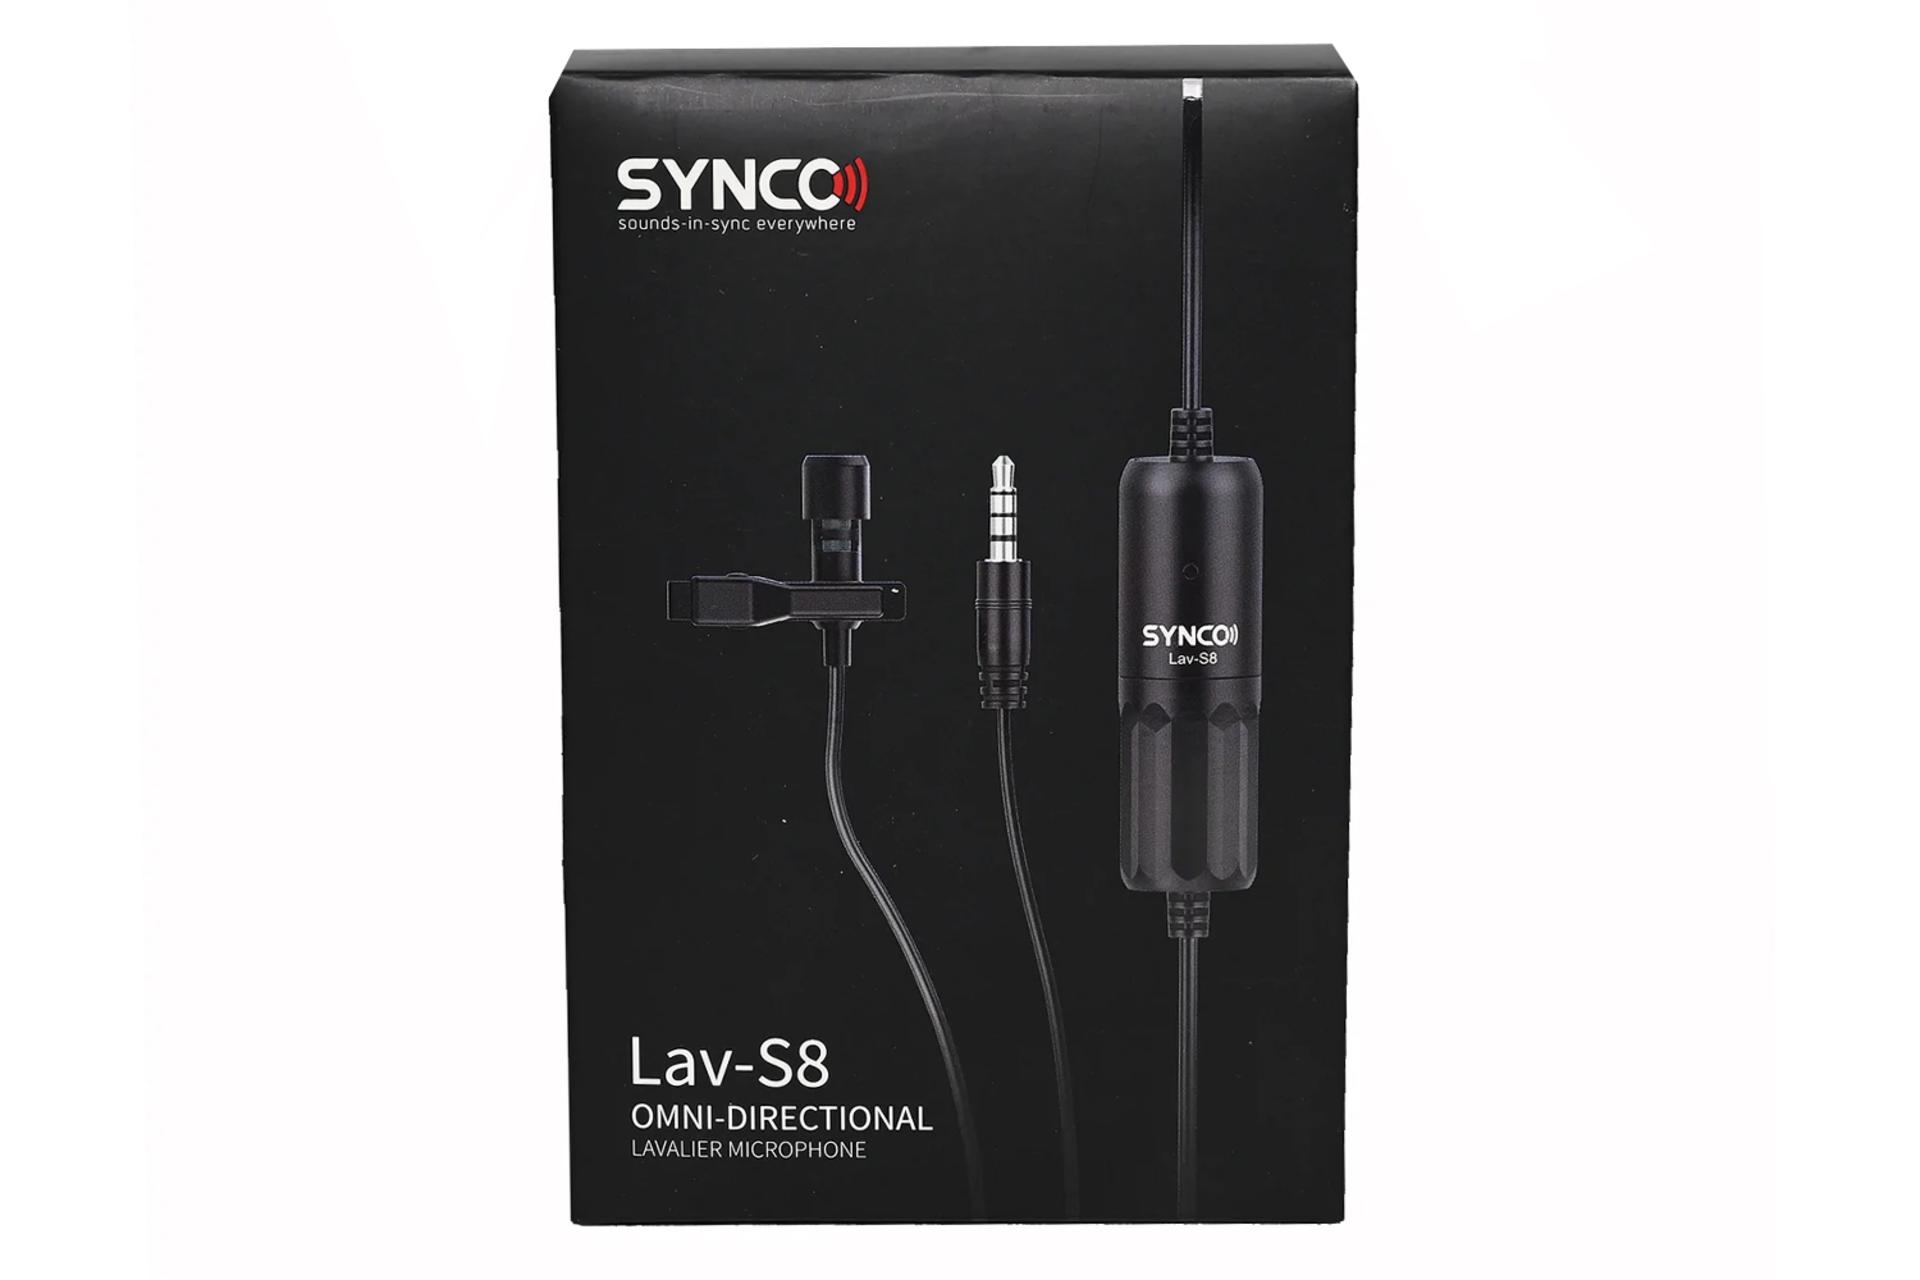 جعبه میکروفون سینکو SYNCO Lav-S8